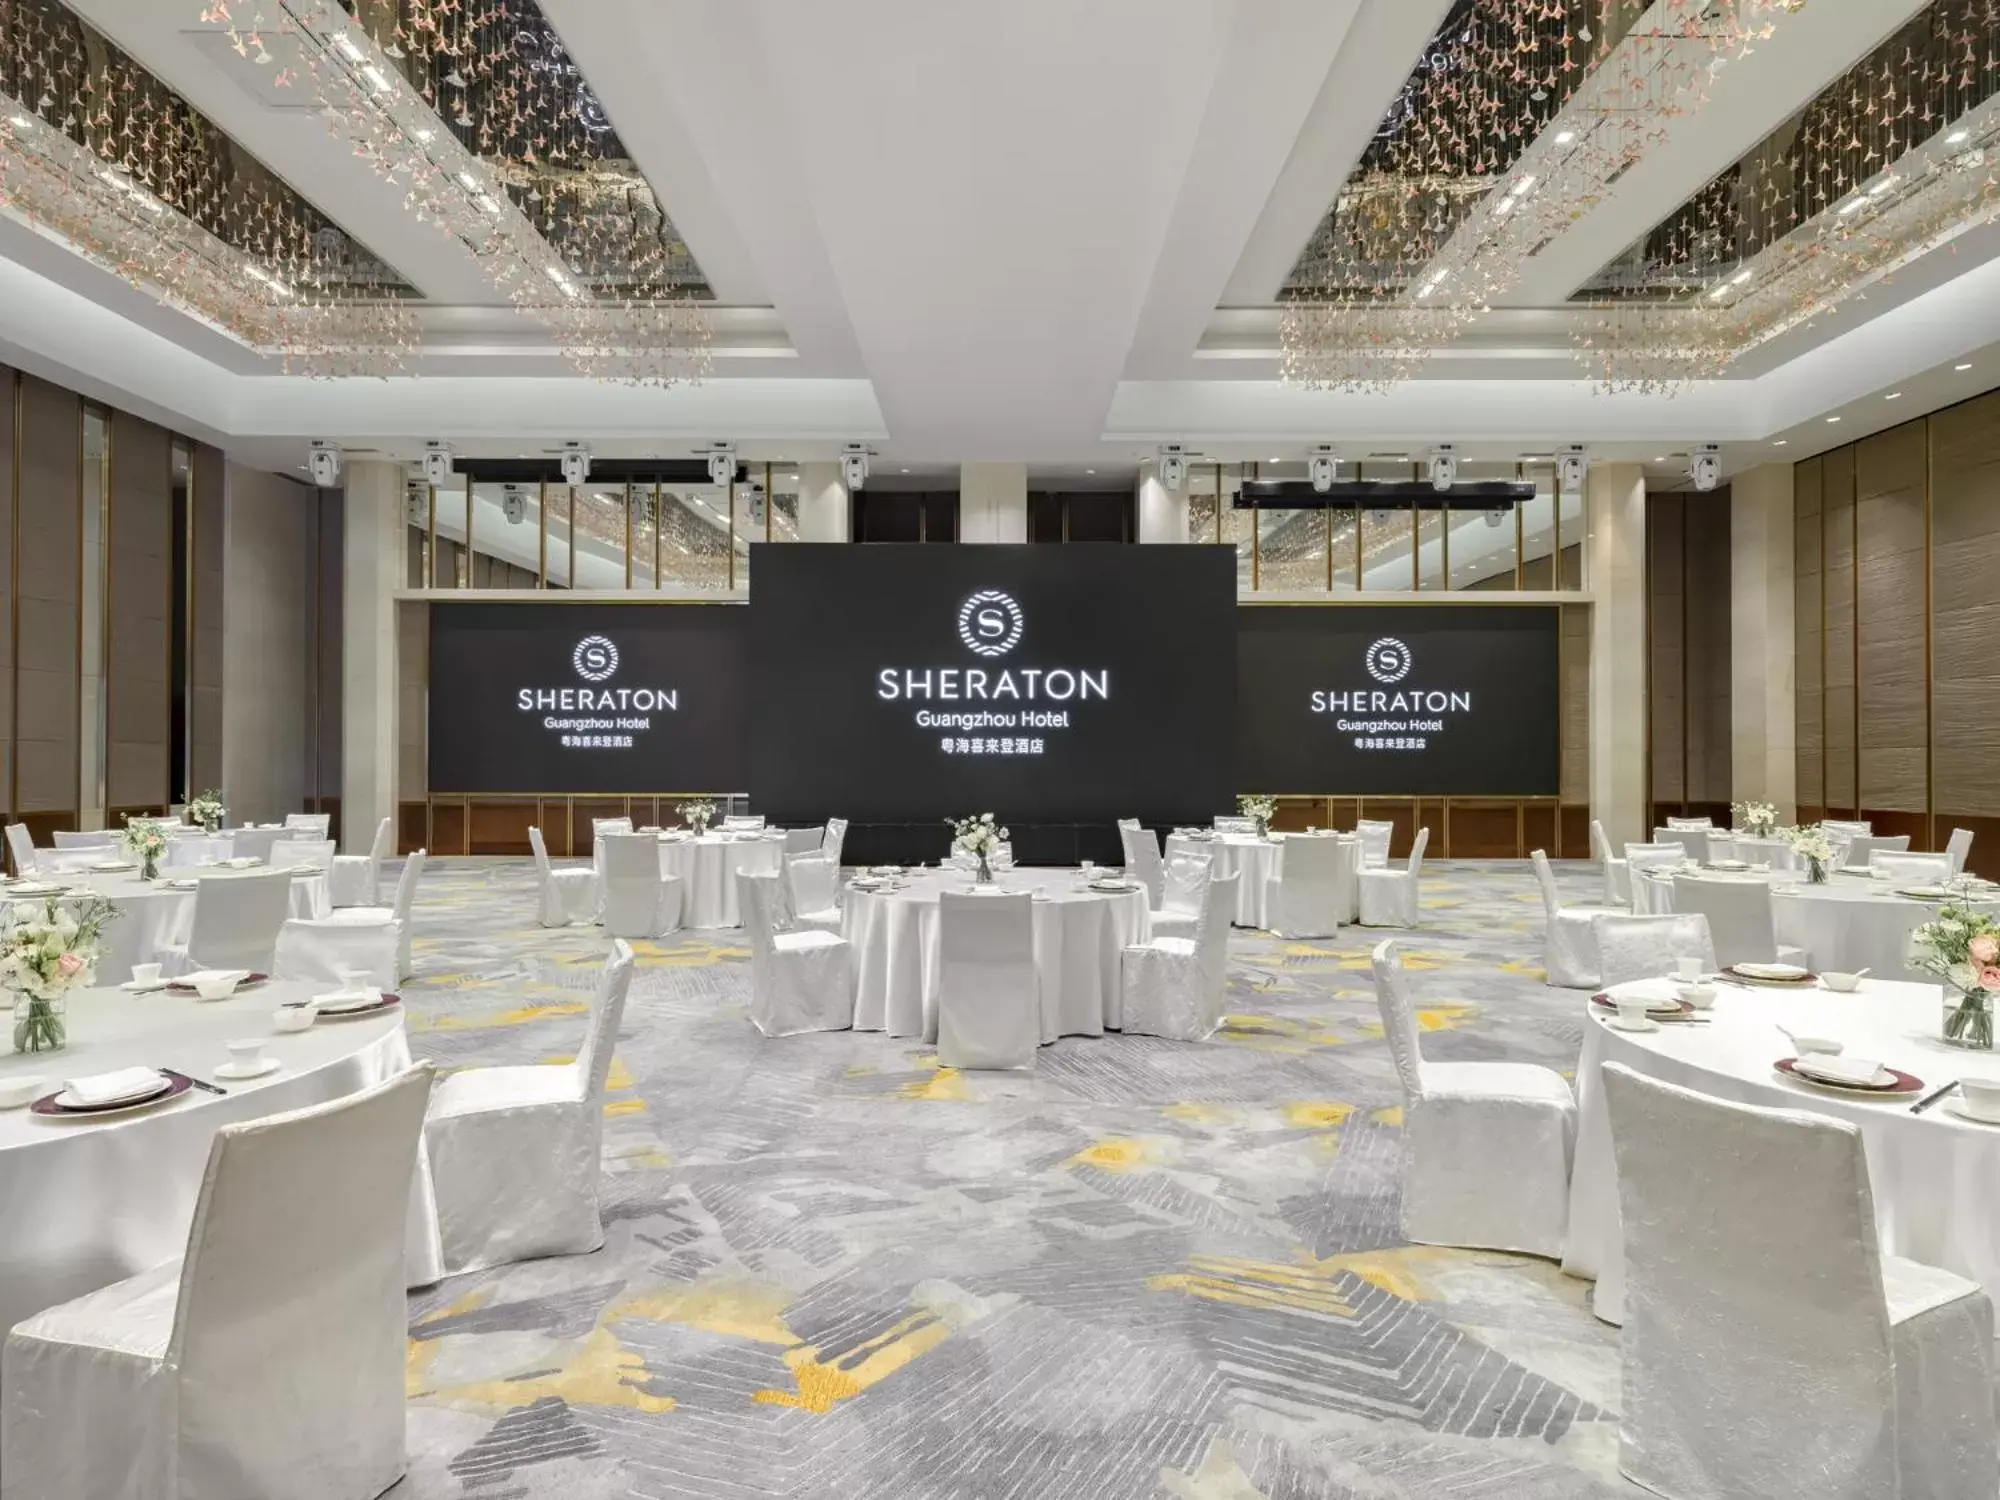 Banquet/Function facilities, Banquet Facilities in Sheraton Guangzhou Hotel